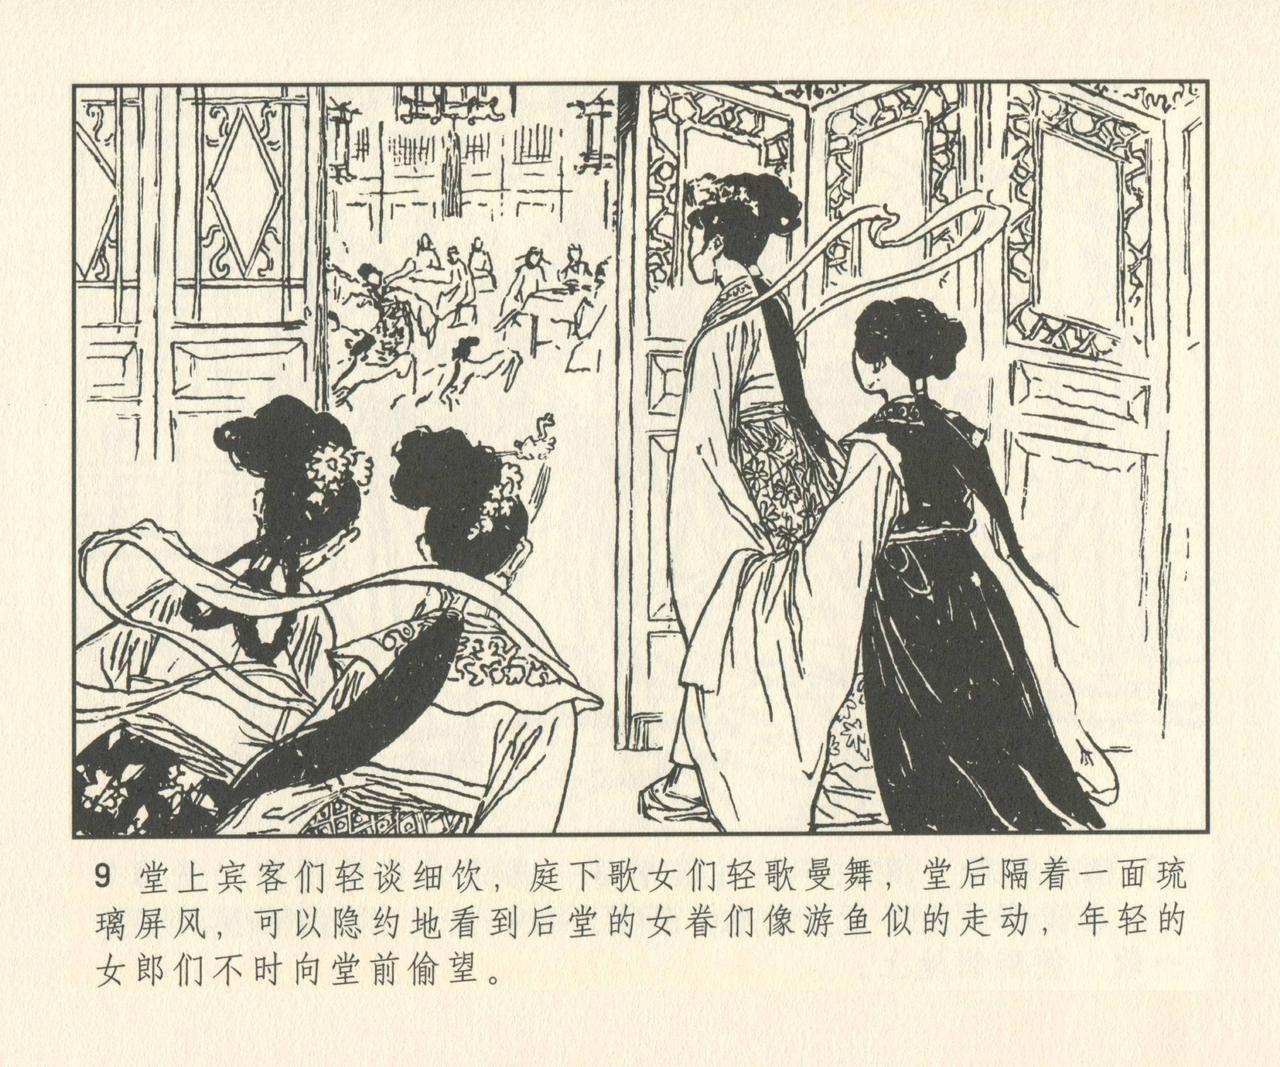 聊斋志异 张玮等绘 天津人民美术出版社 卷二十一 ~ 三十 137